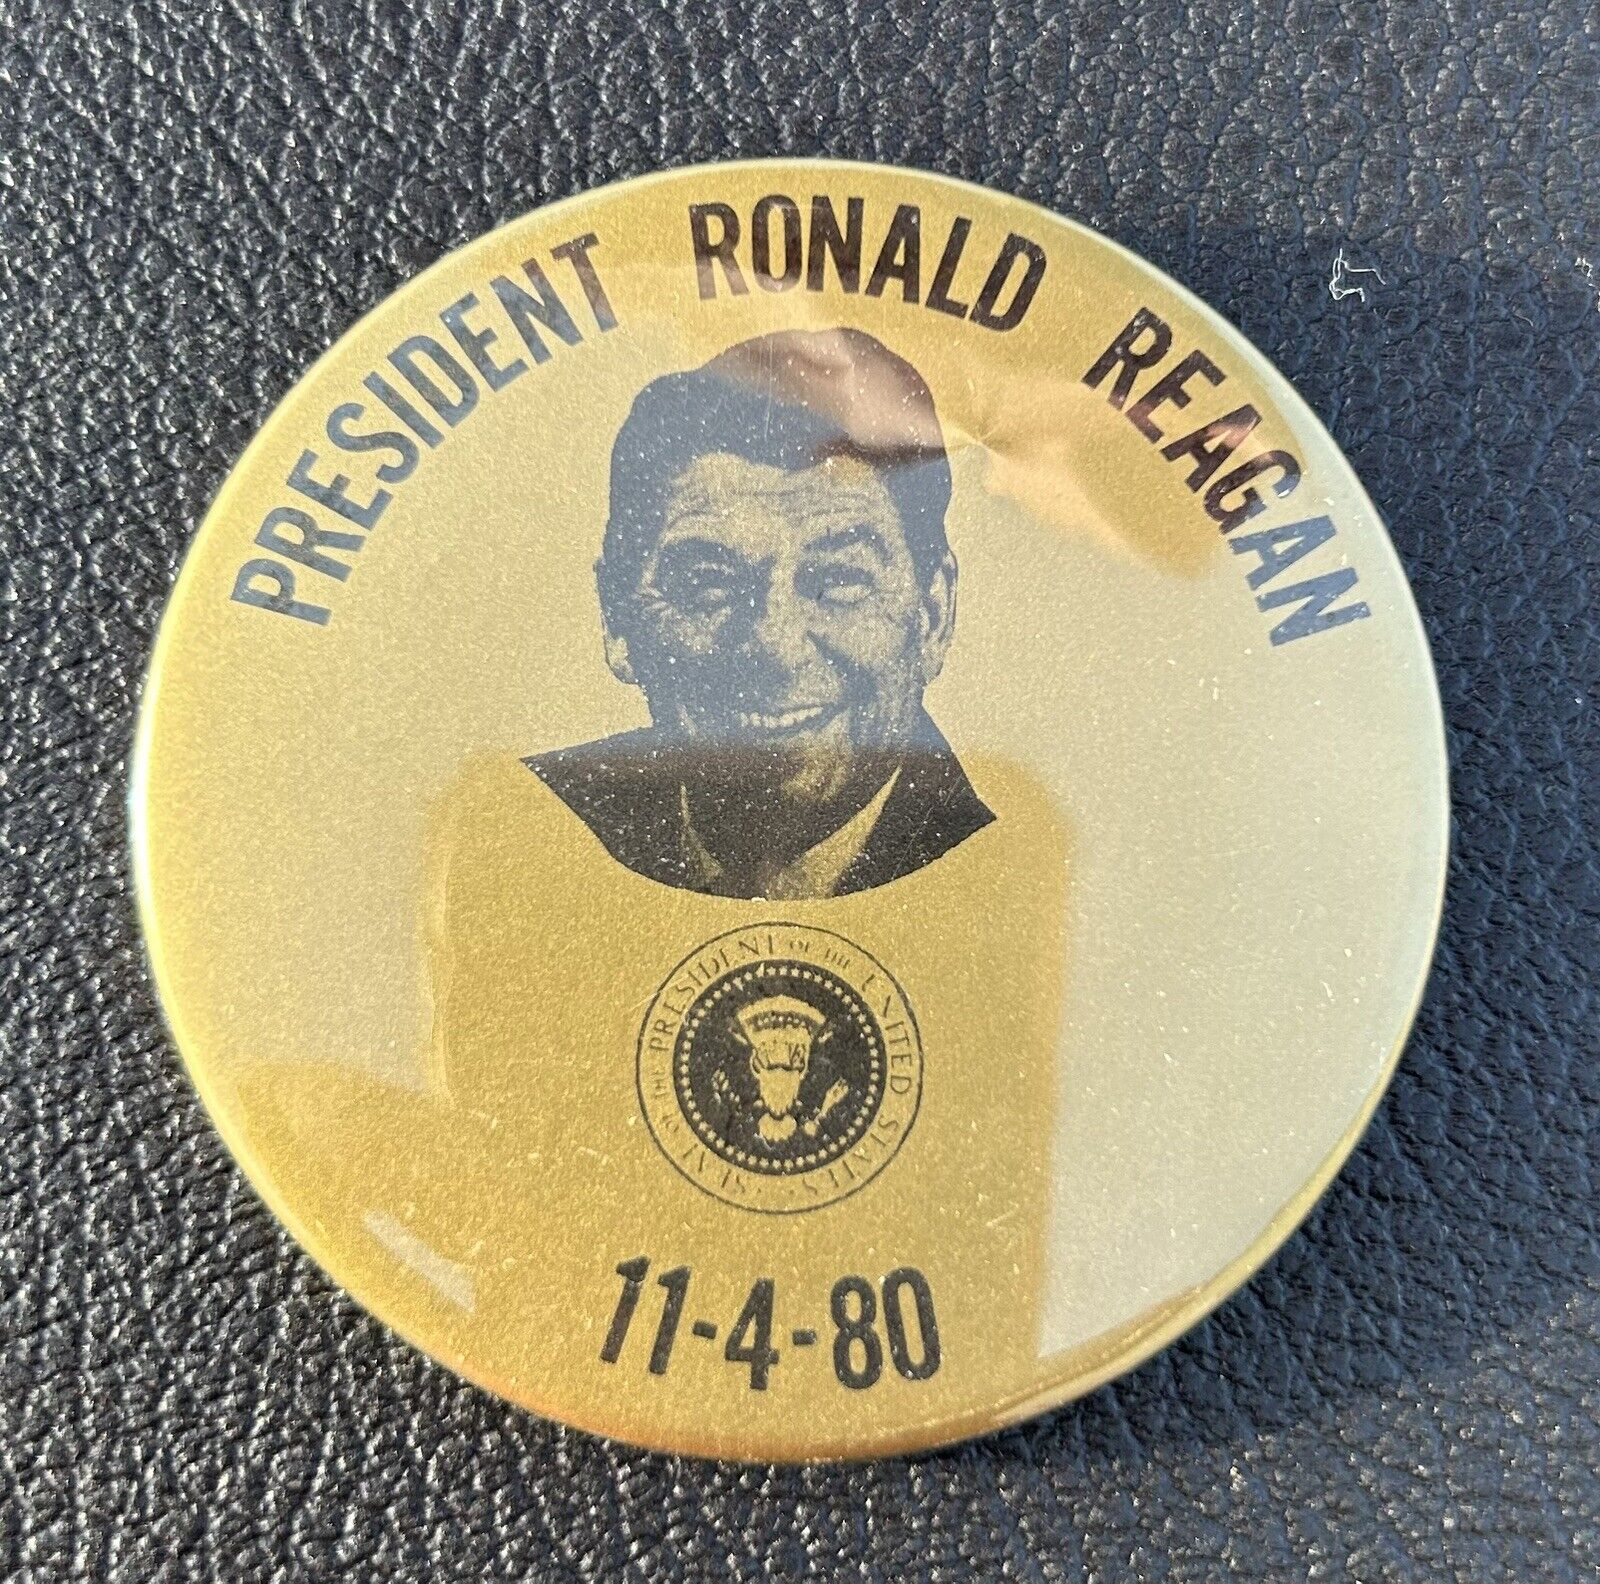 Ronald Reagan presidential campaign pin button  GOP 1980